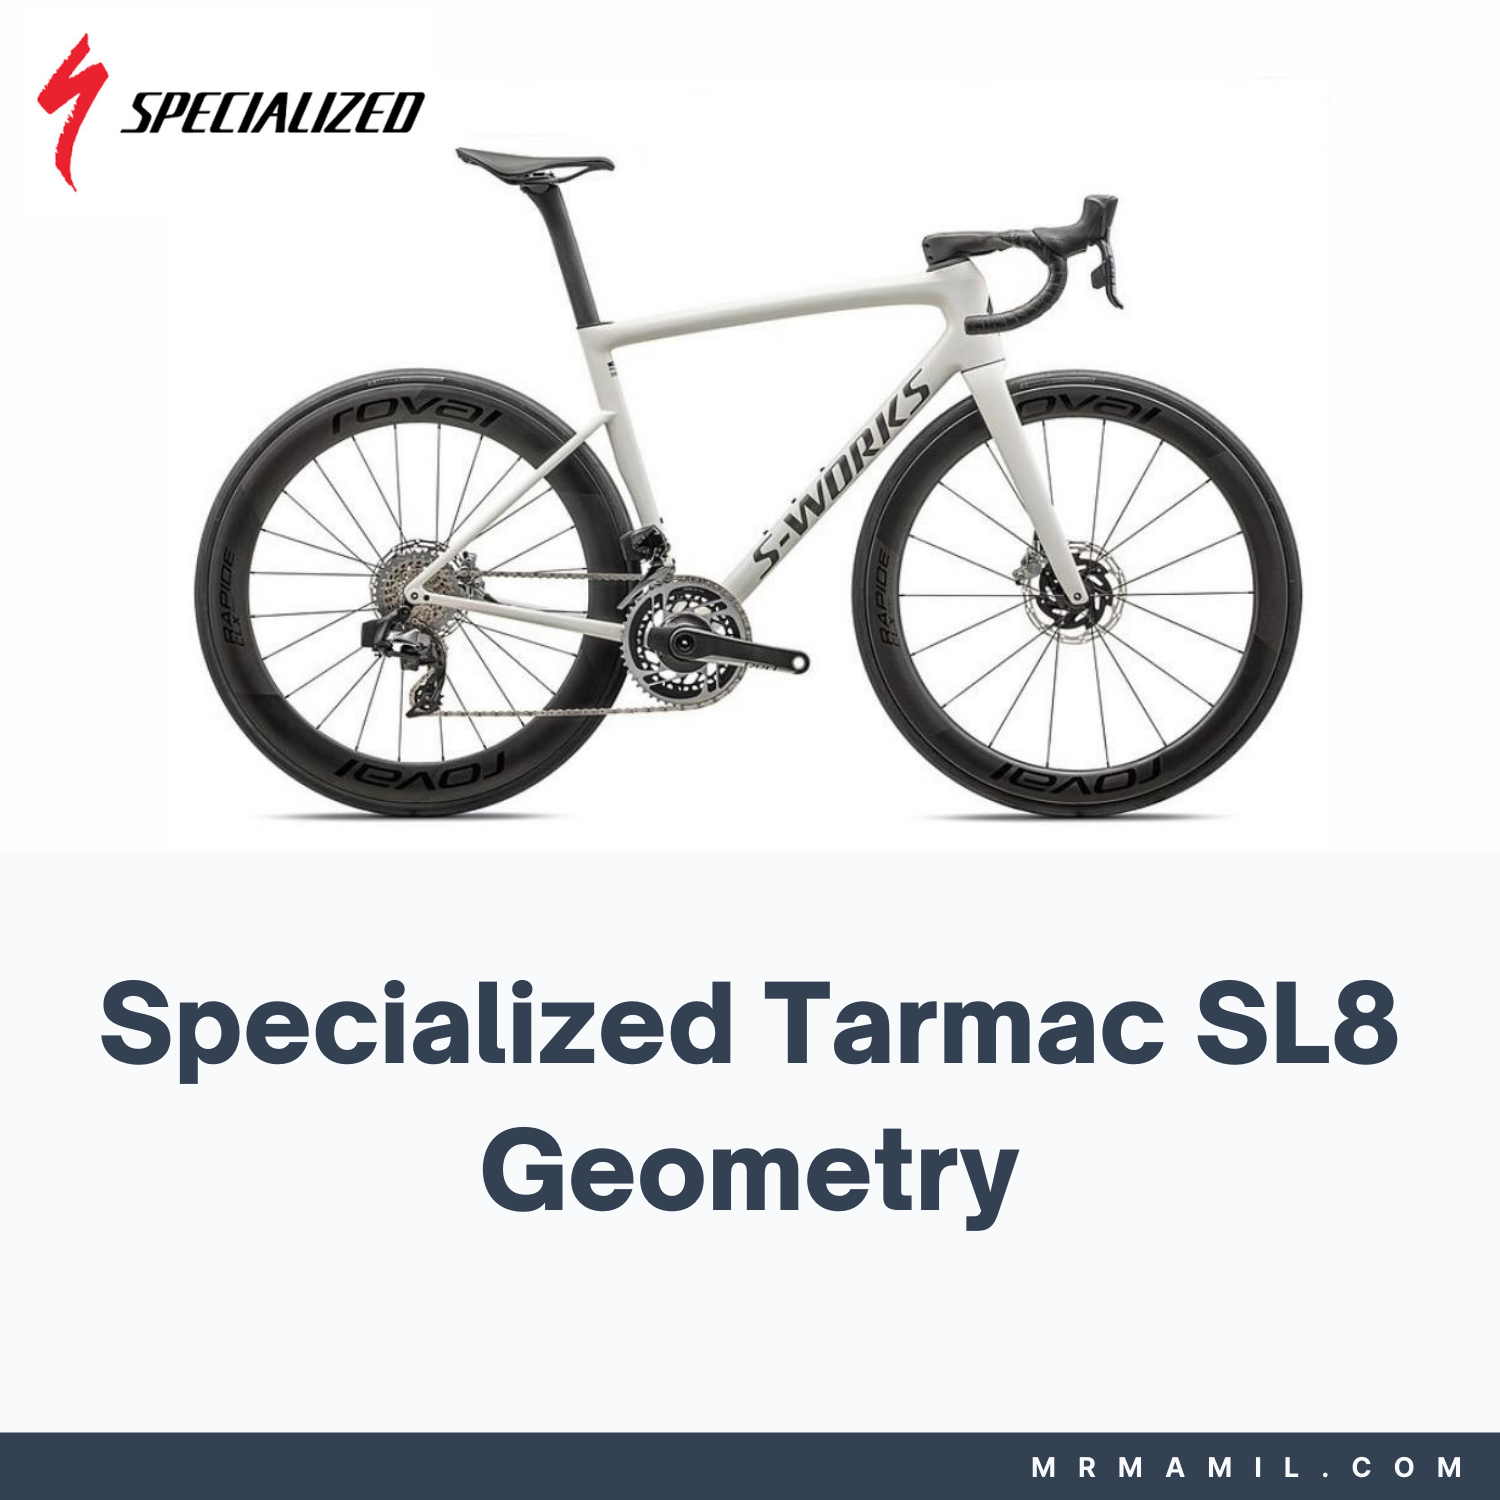 Specialized Tarmac SL8 Frame Geometry